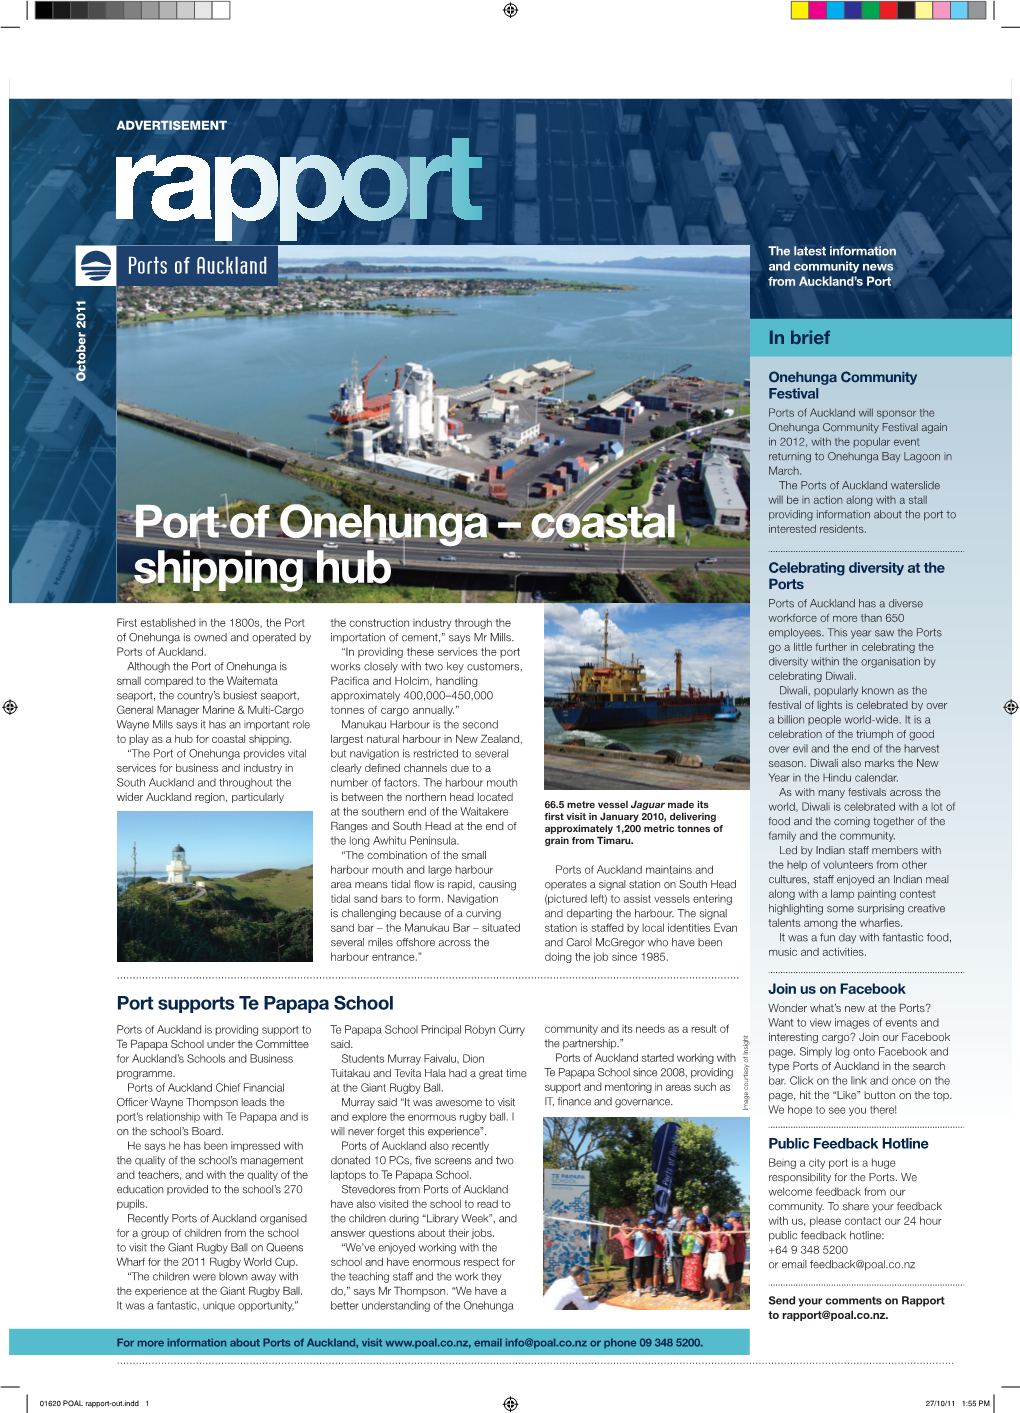 Port of Onehunga – Coastal Shipping